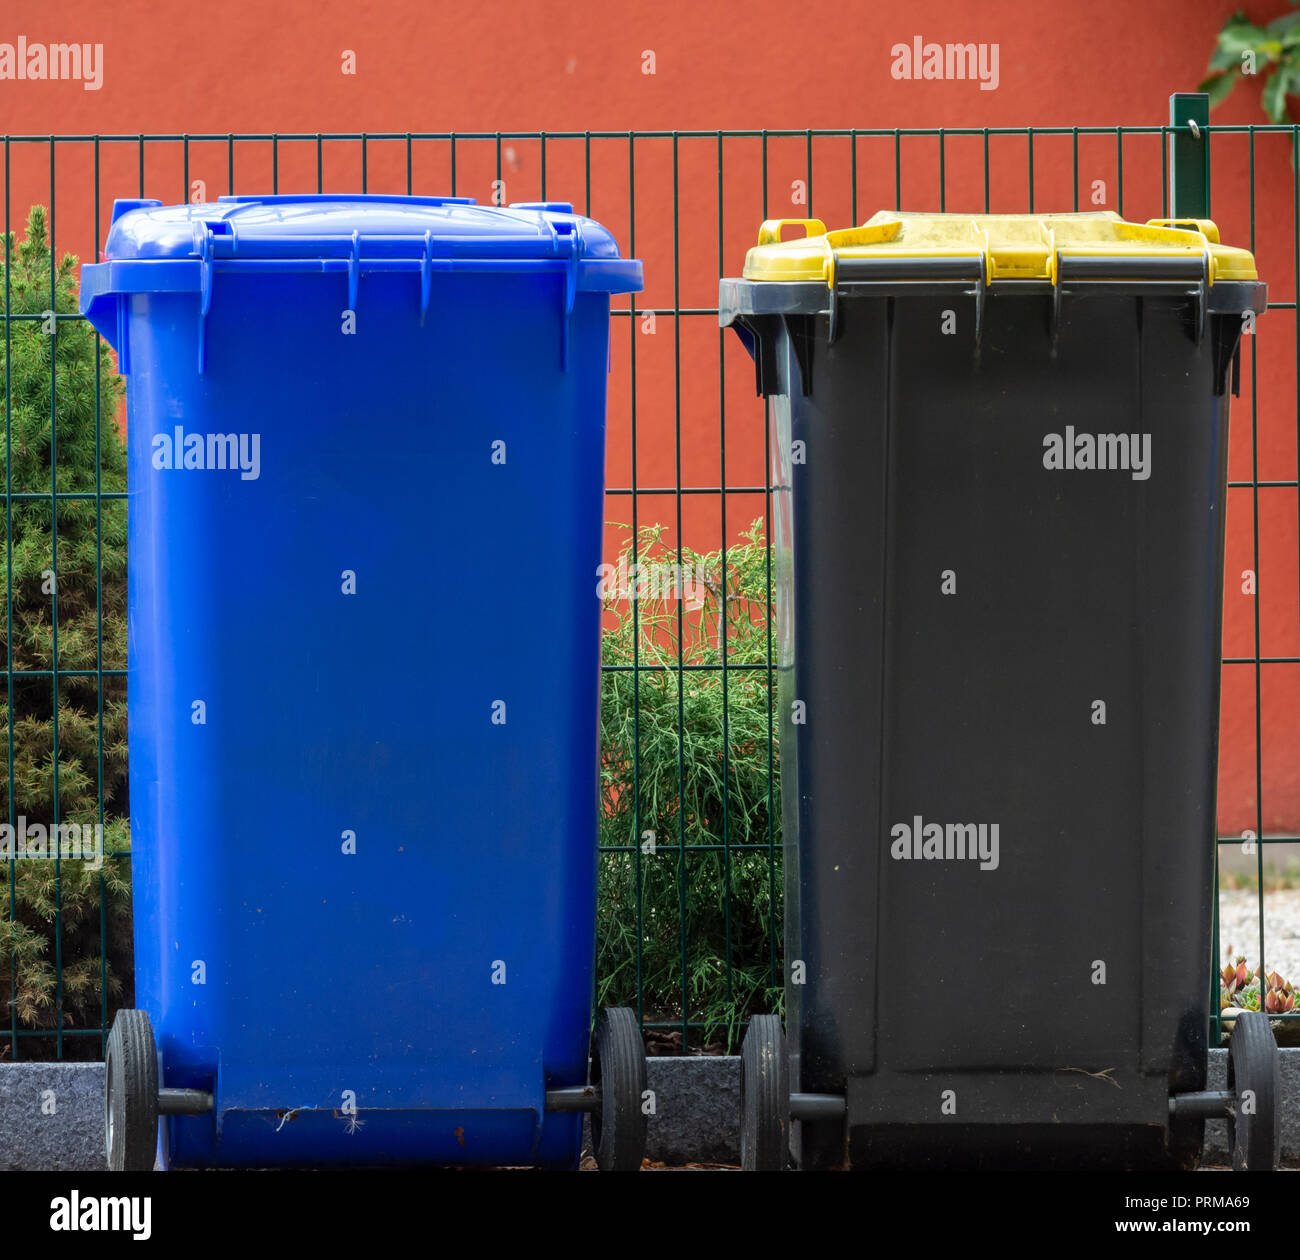 Reihe von Mülltonnen für Wate Mülltrennung und recycling Stockfoto